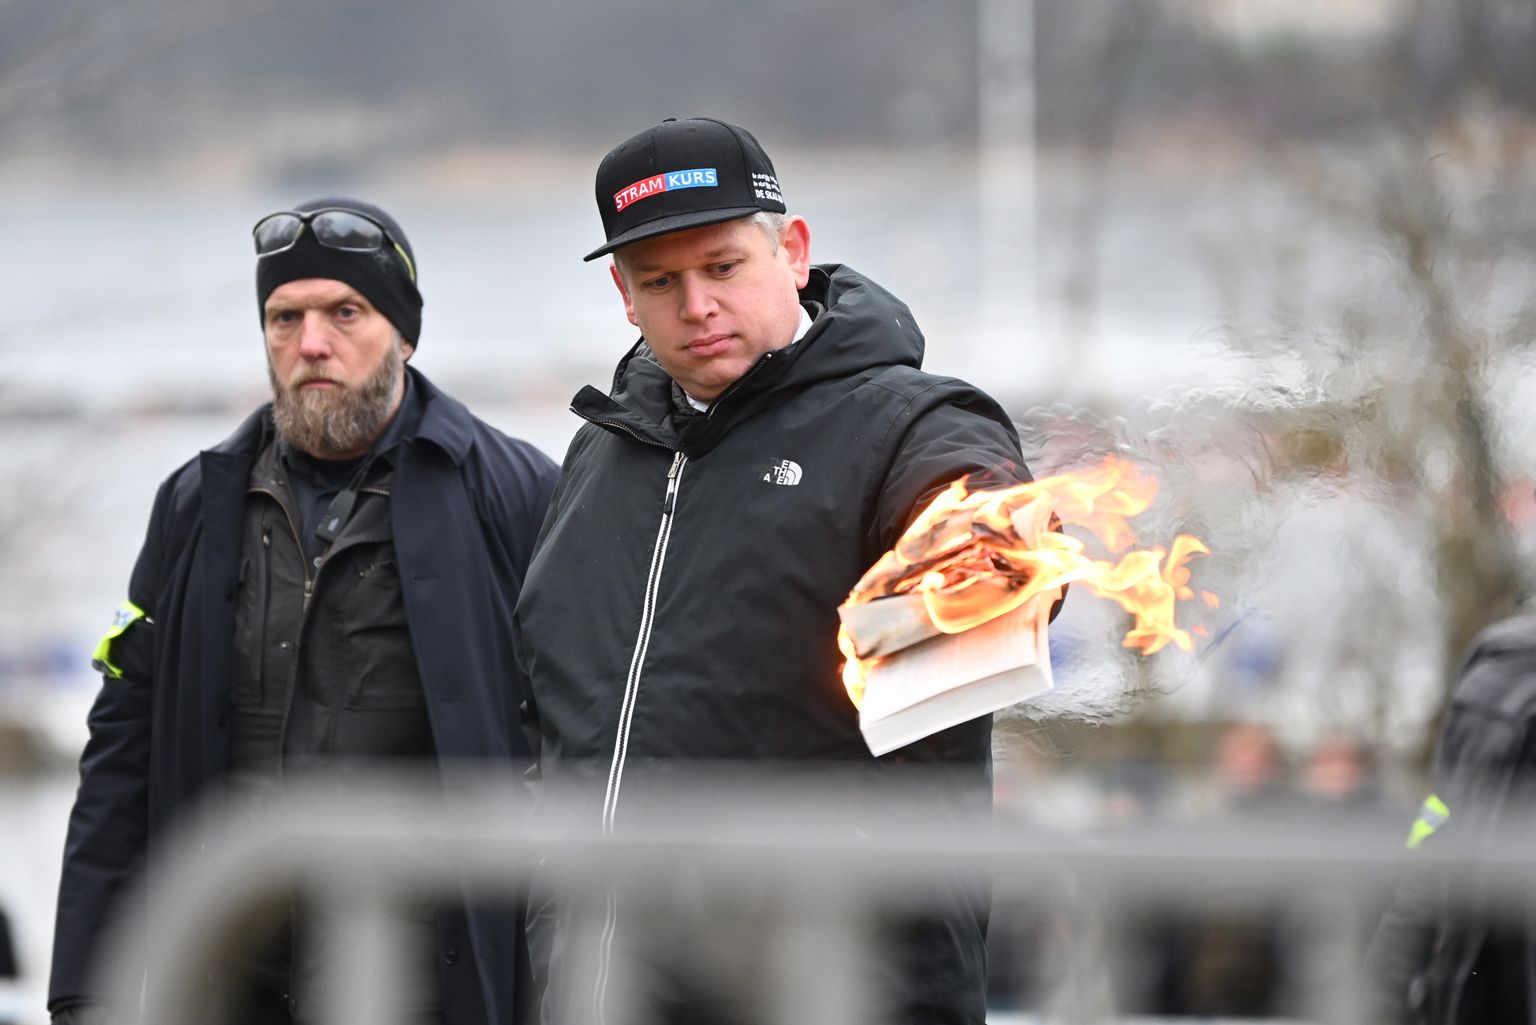 Rootsi-Taani poliitik Rasmus Paludan põletas koraani Türgi saatkonna ees Stockholmis.